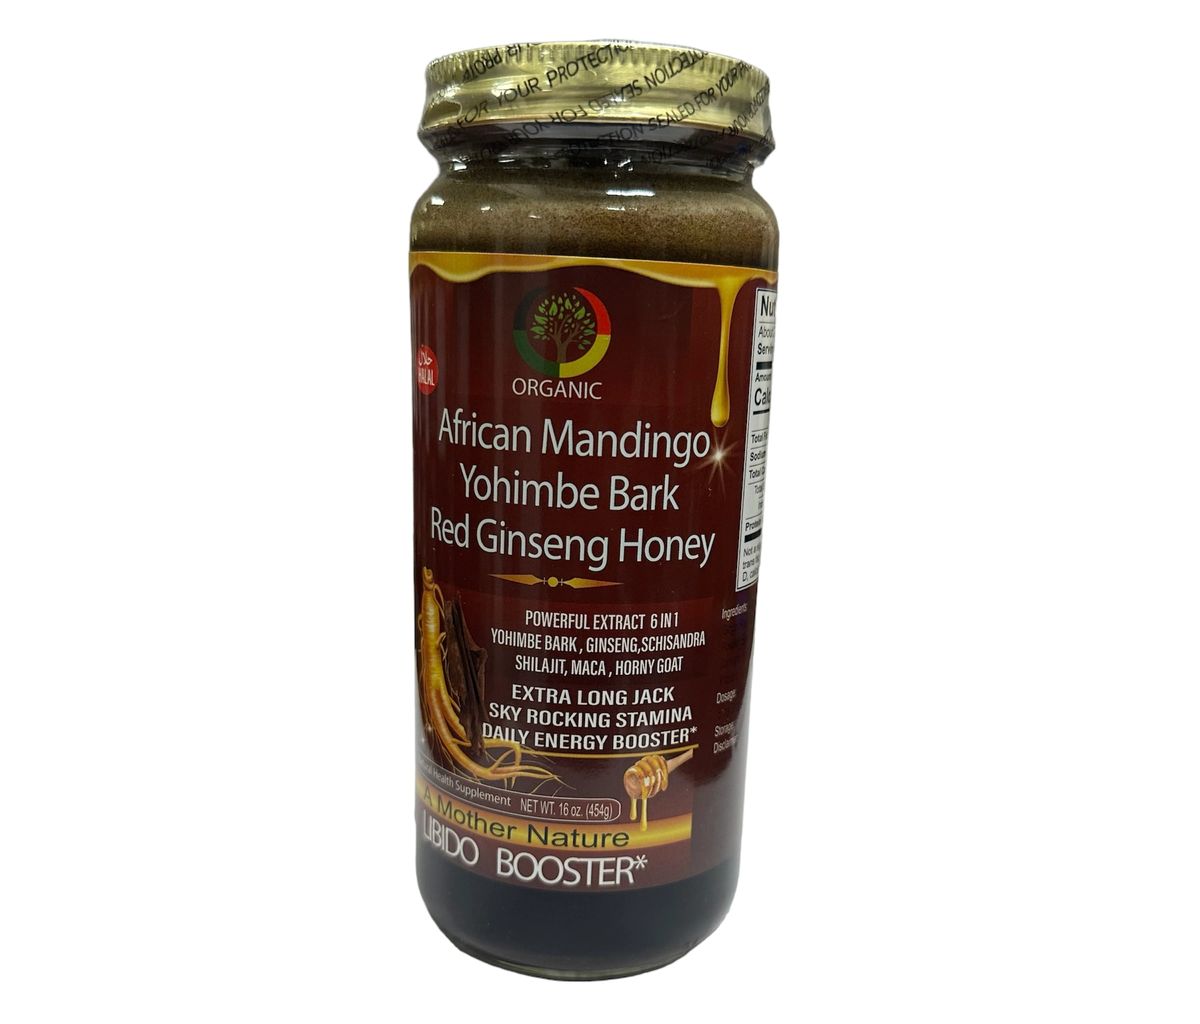 African Mandingo Yohimbe Bark Red Ginseng Honey